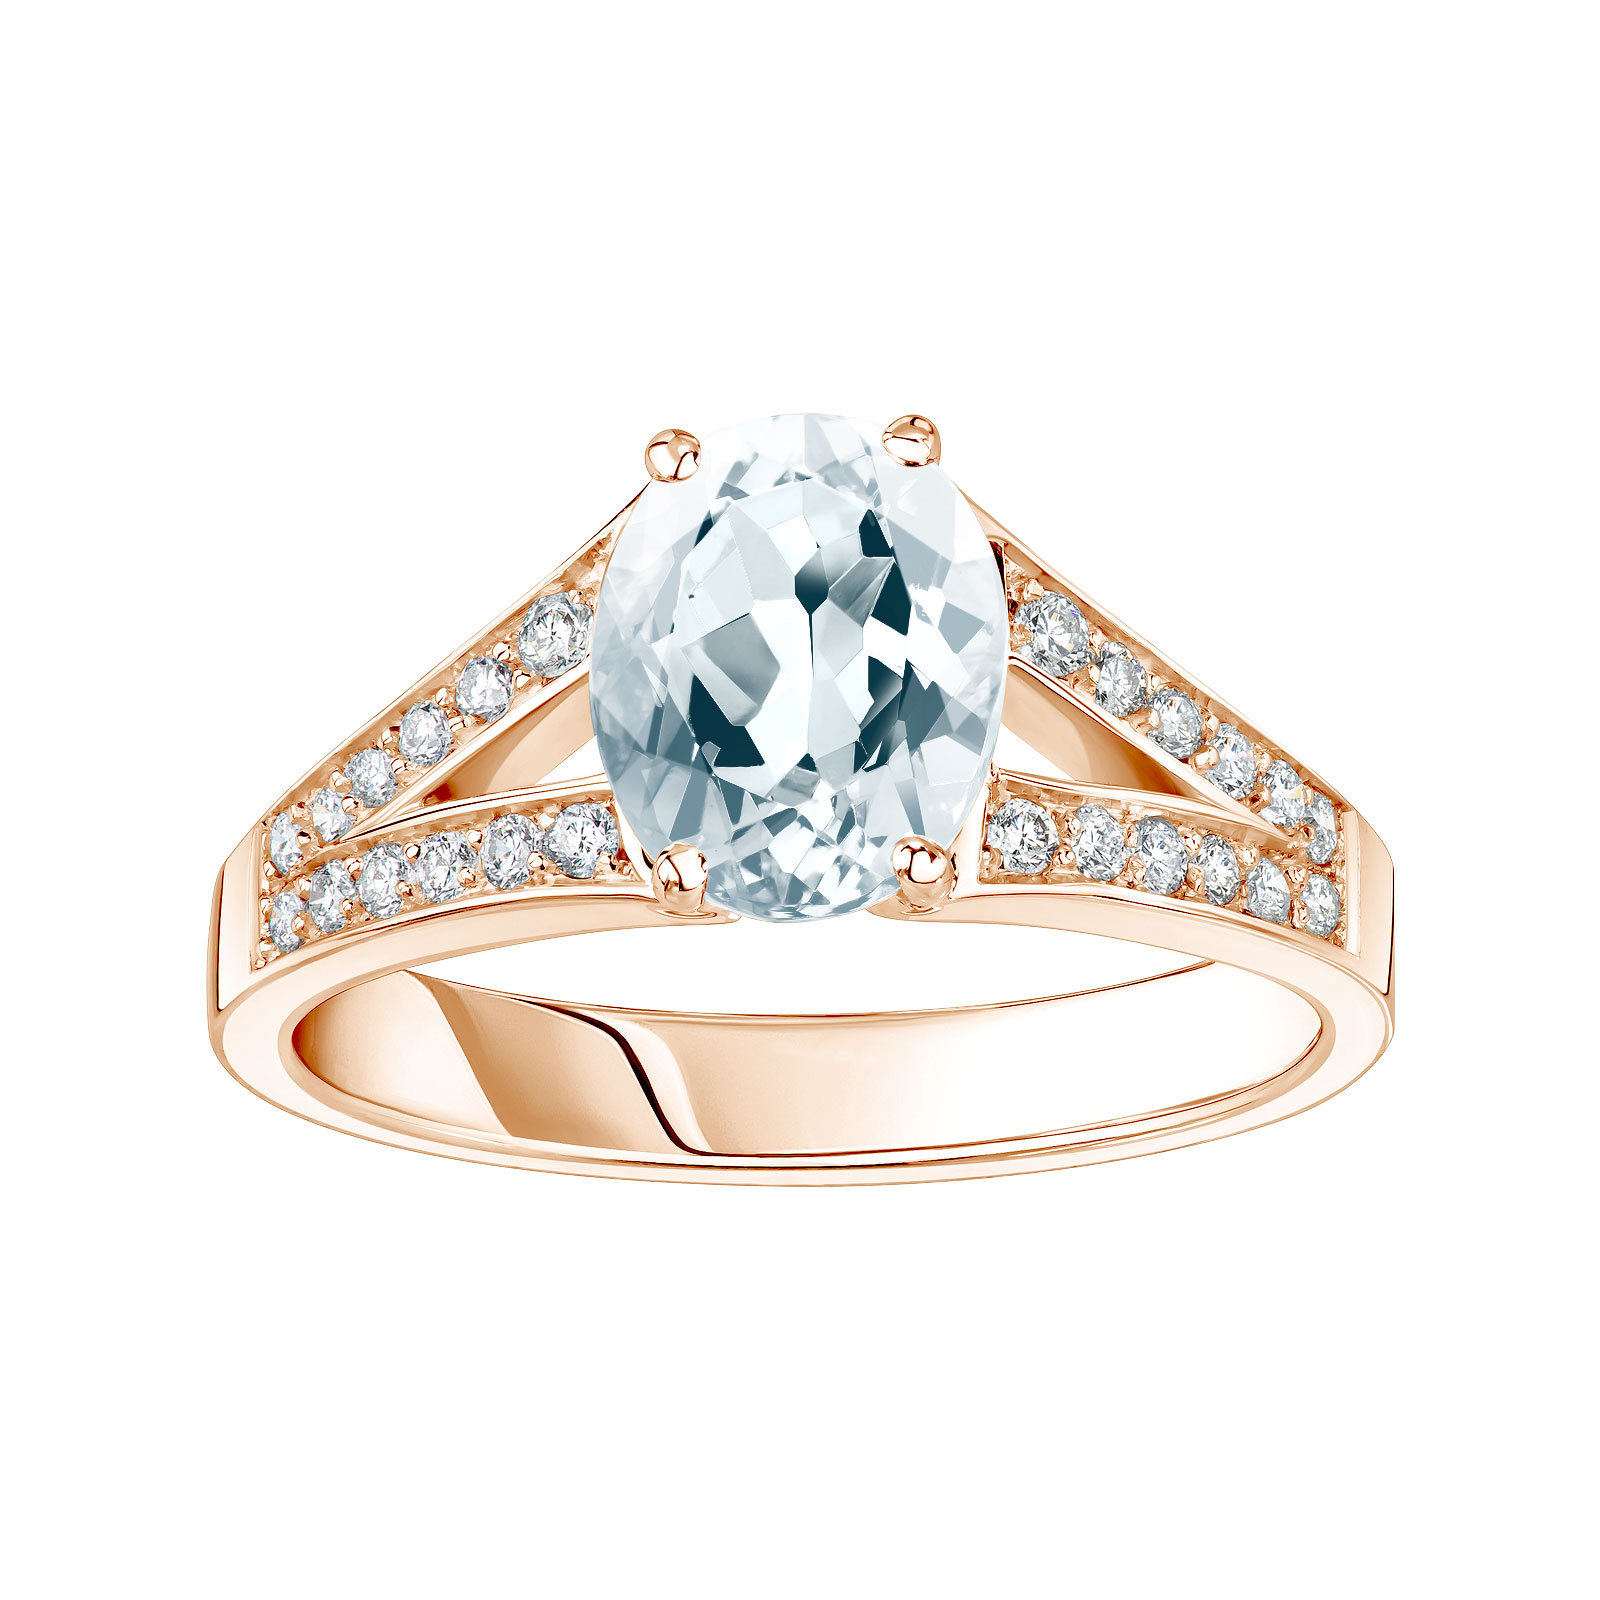 Bague Or rose Aigue-marine et diamants Rétromantique Tiare Pavée 1